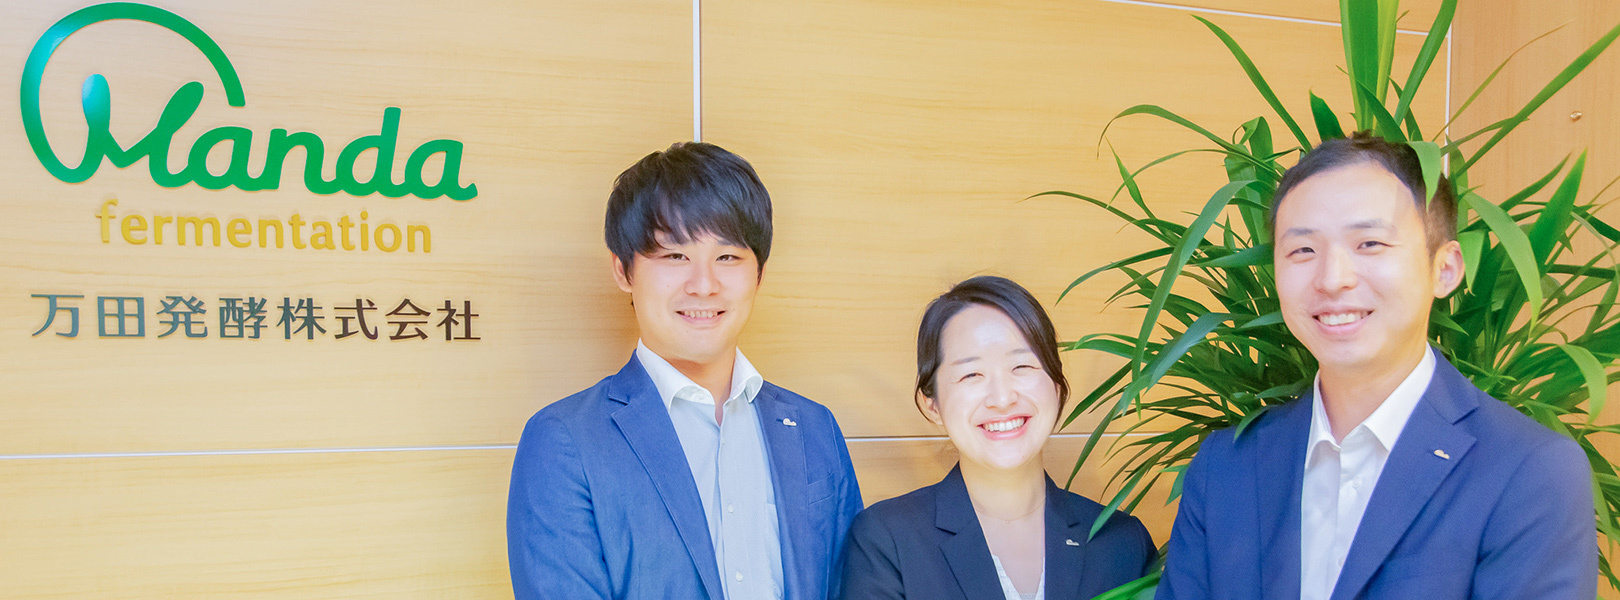 万田発酵 株式会社の採用 求人 転職サイトgreen グリーン